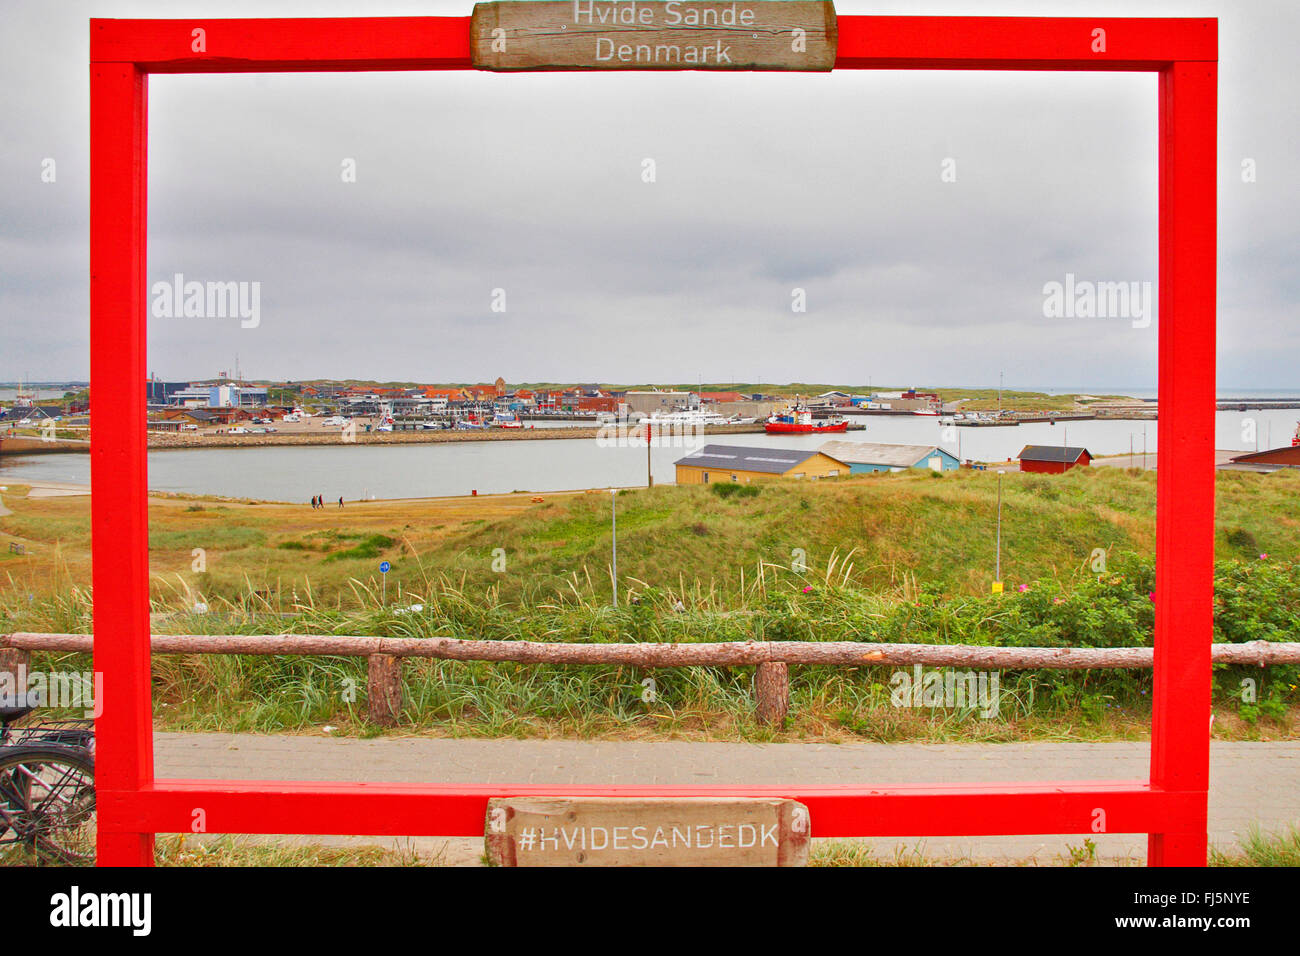 view through a red frame to Hvide Sande, Denmark, Hvide Sande Stock Photo